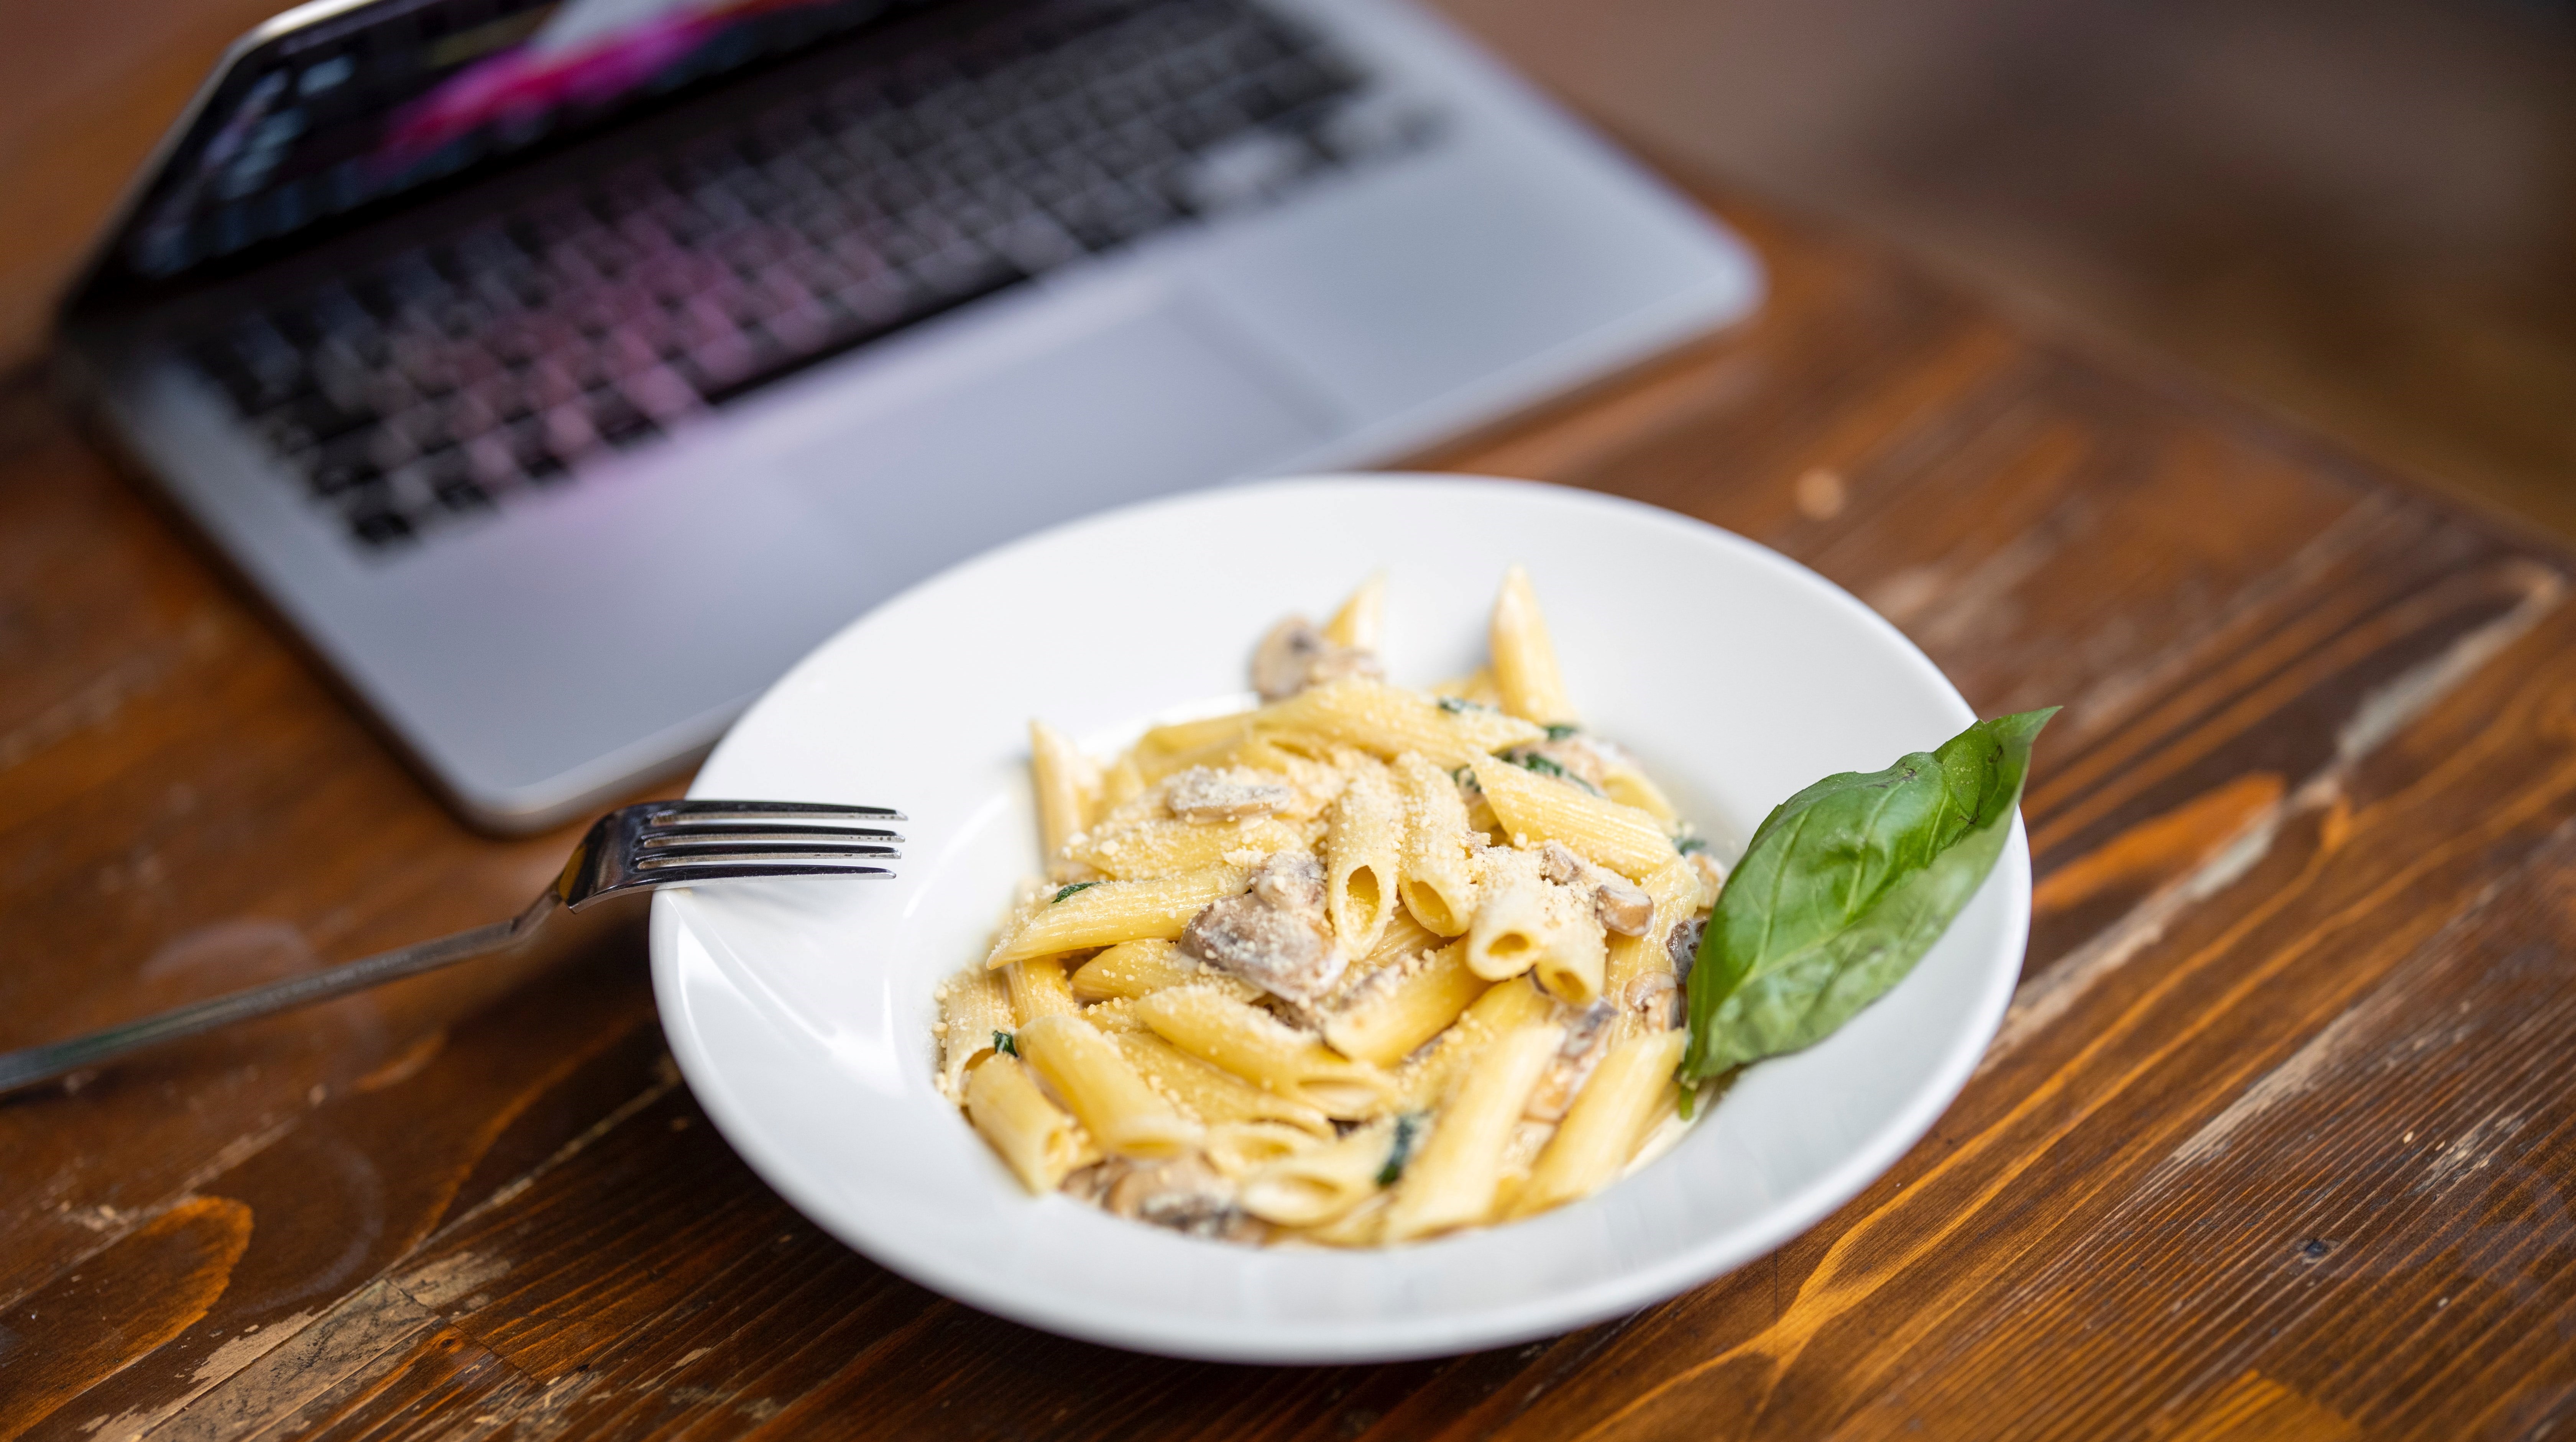 Lunchtallrik med pasta framför laptop, foto